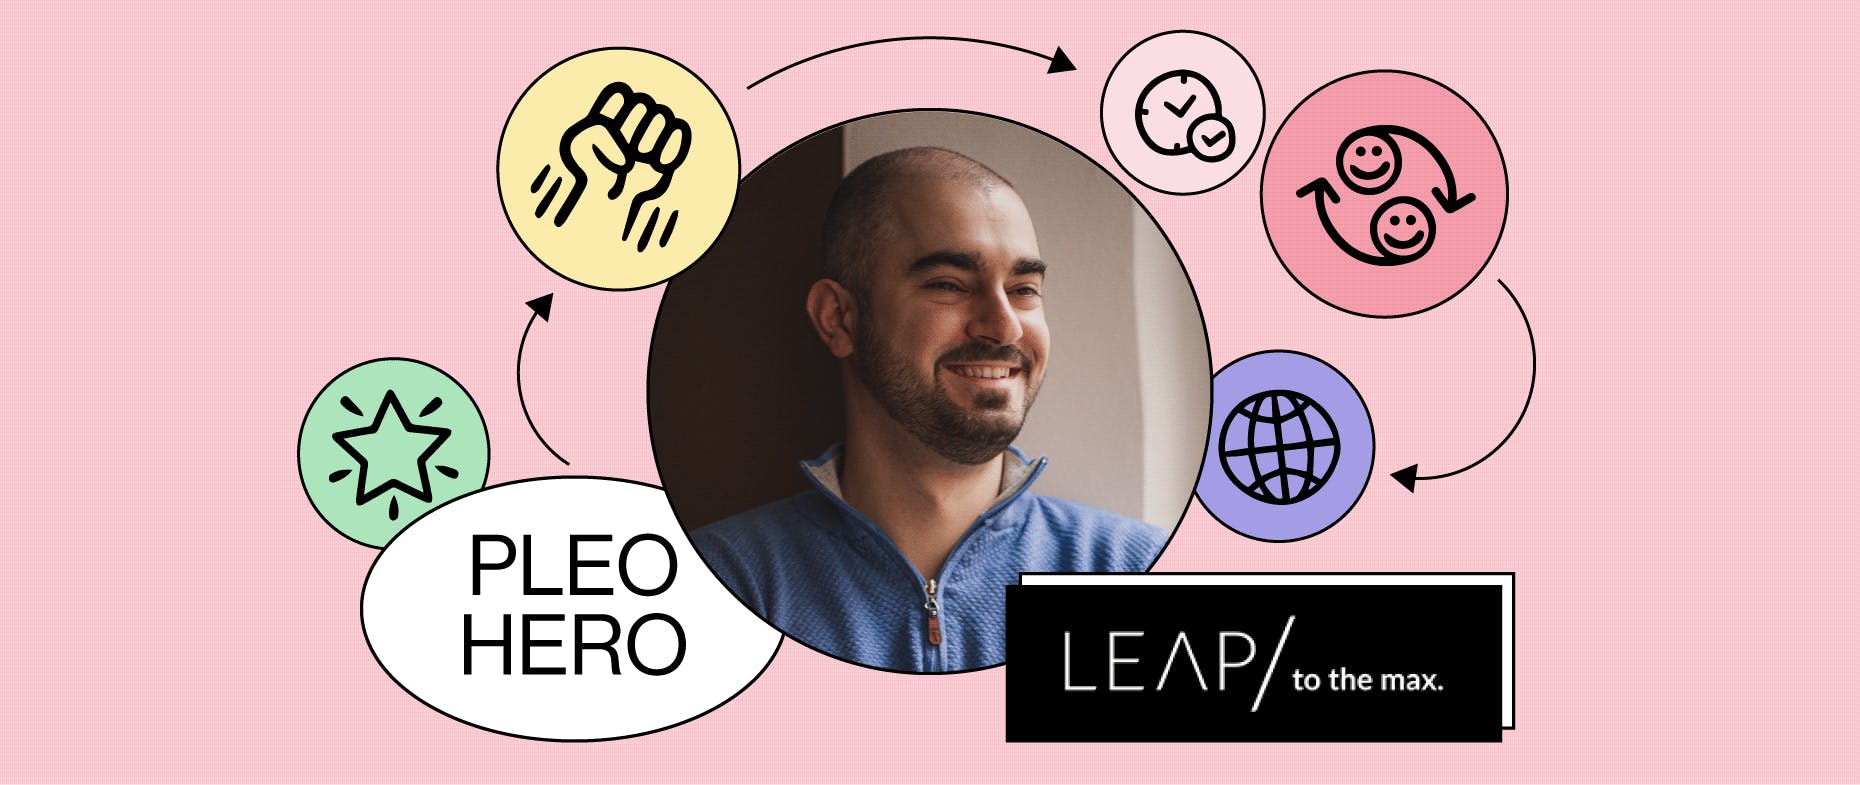 Pleo Hero: Leap